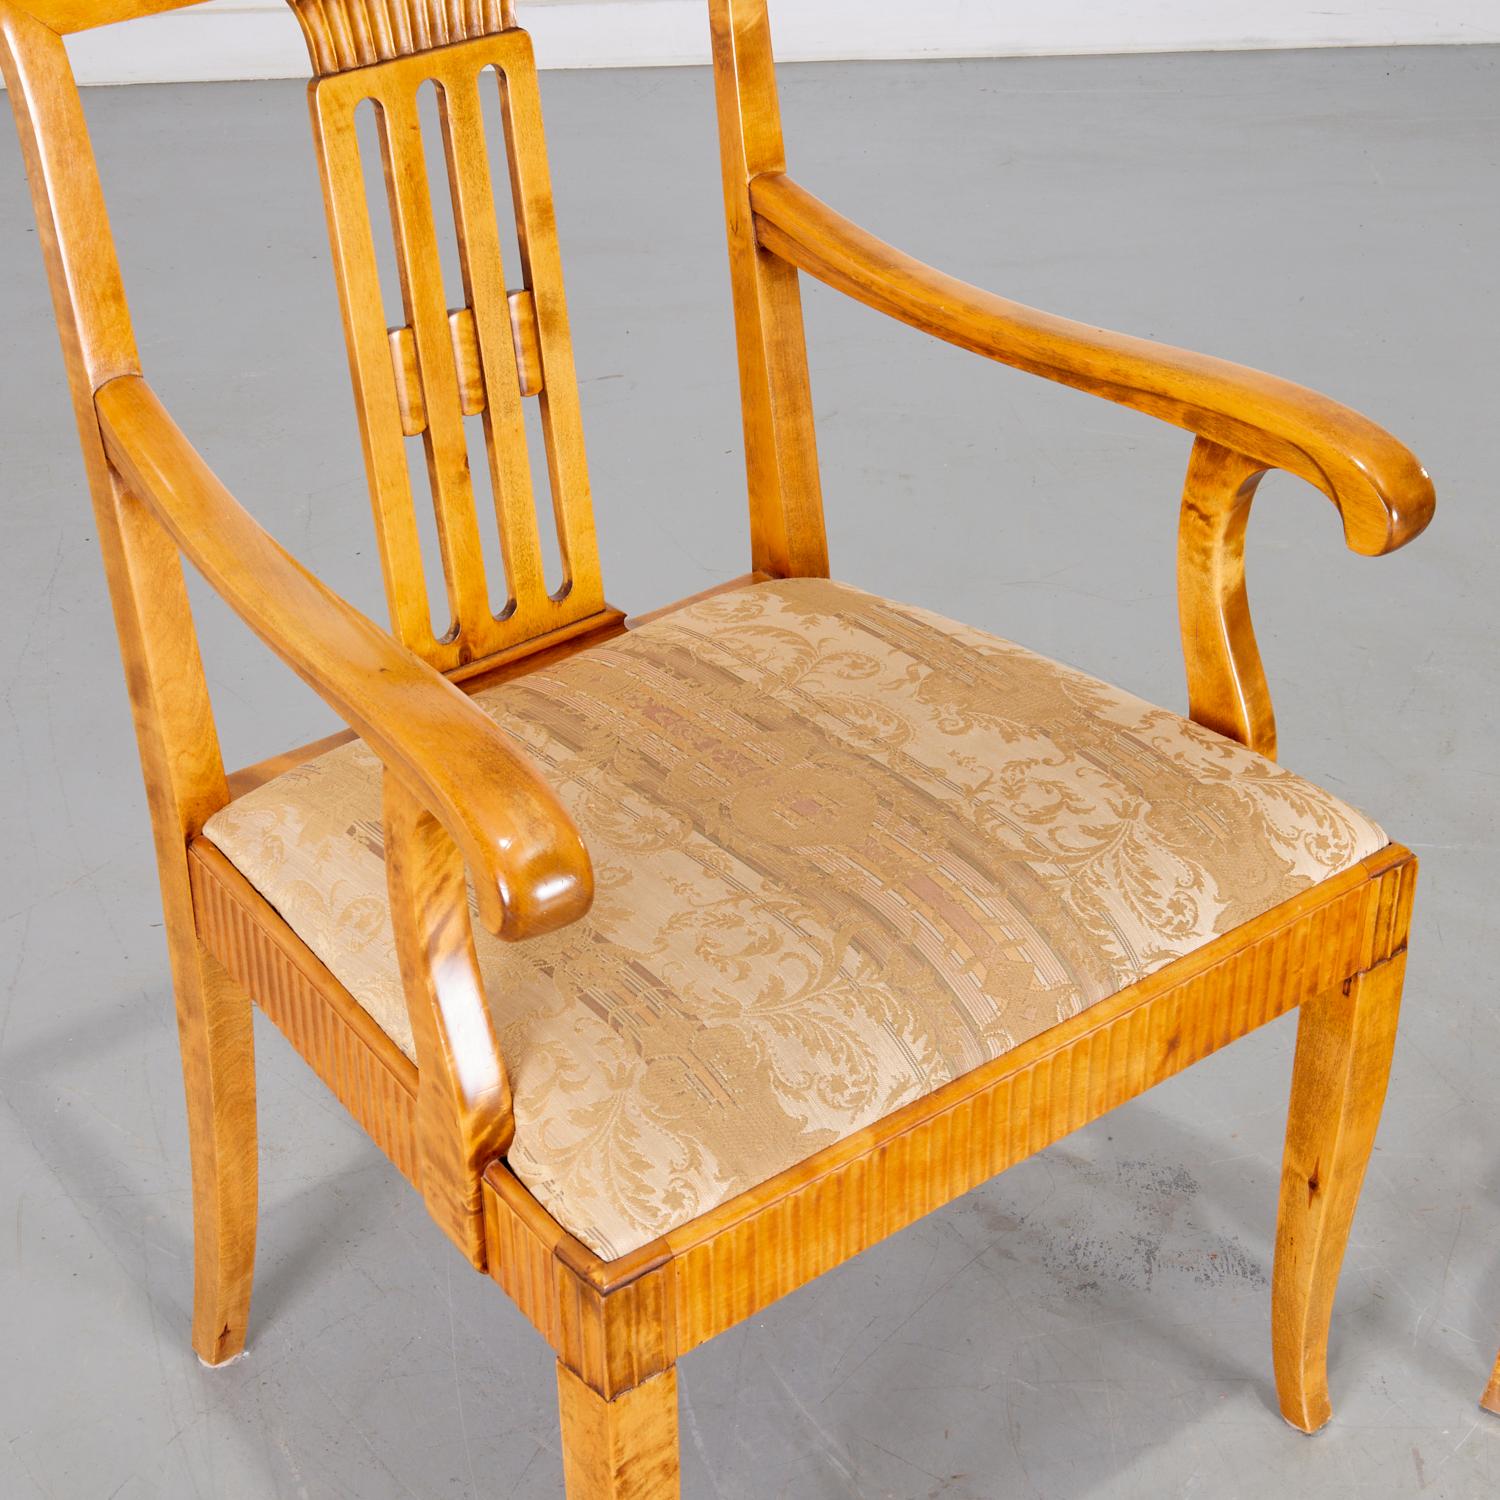 20. Jh., schwedische Sessel aus Birkenholz im neoklassizistischen Stil mit hellen Damastpolstern, nicht signiert. Diese Stühle sind einfach schön. Die geschwungenen Linien der Armlehnen und die klaren, geschnitzten Details an der Rückenlehne und um